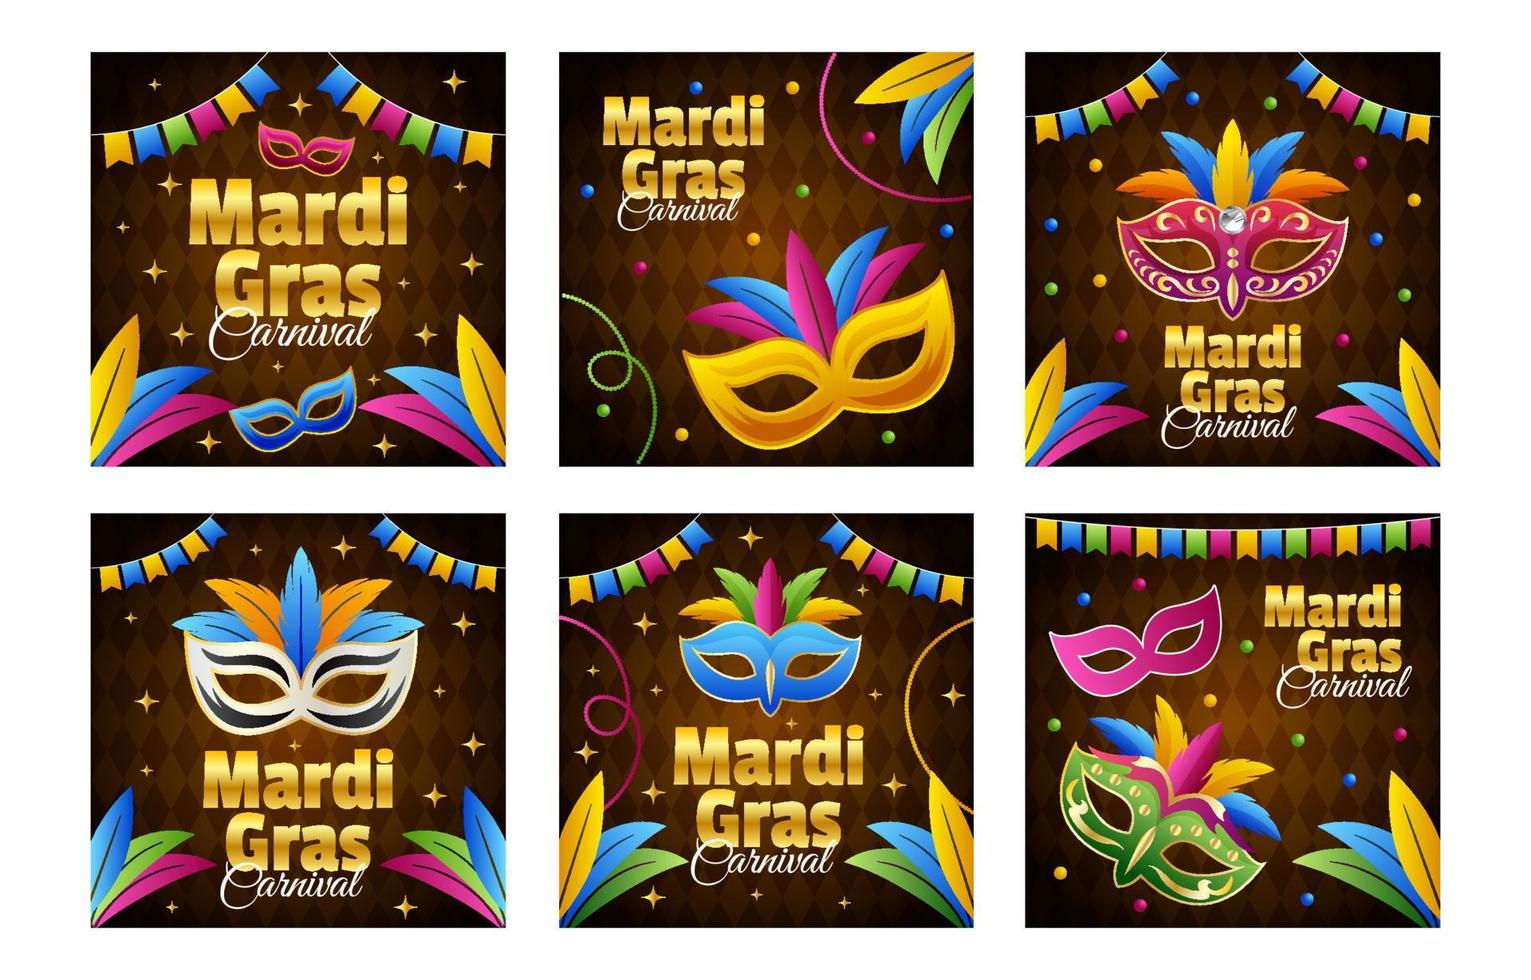 Mardi gras inlägg på sociala medier vektor